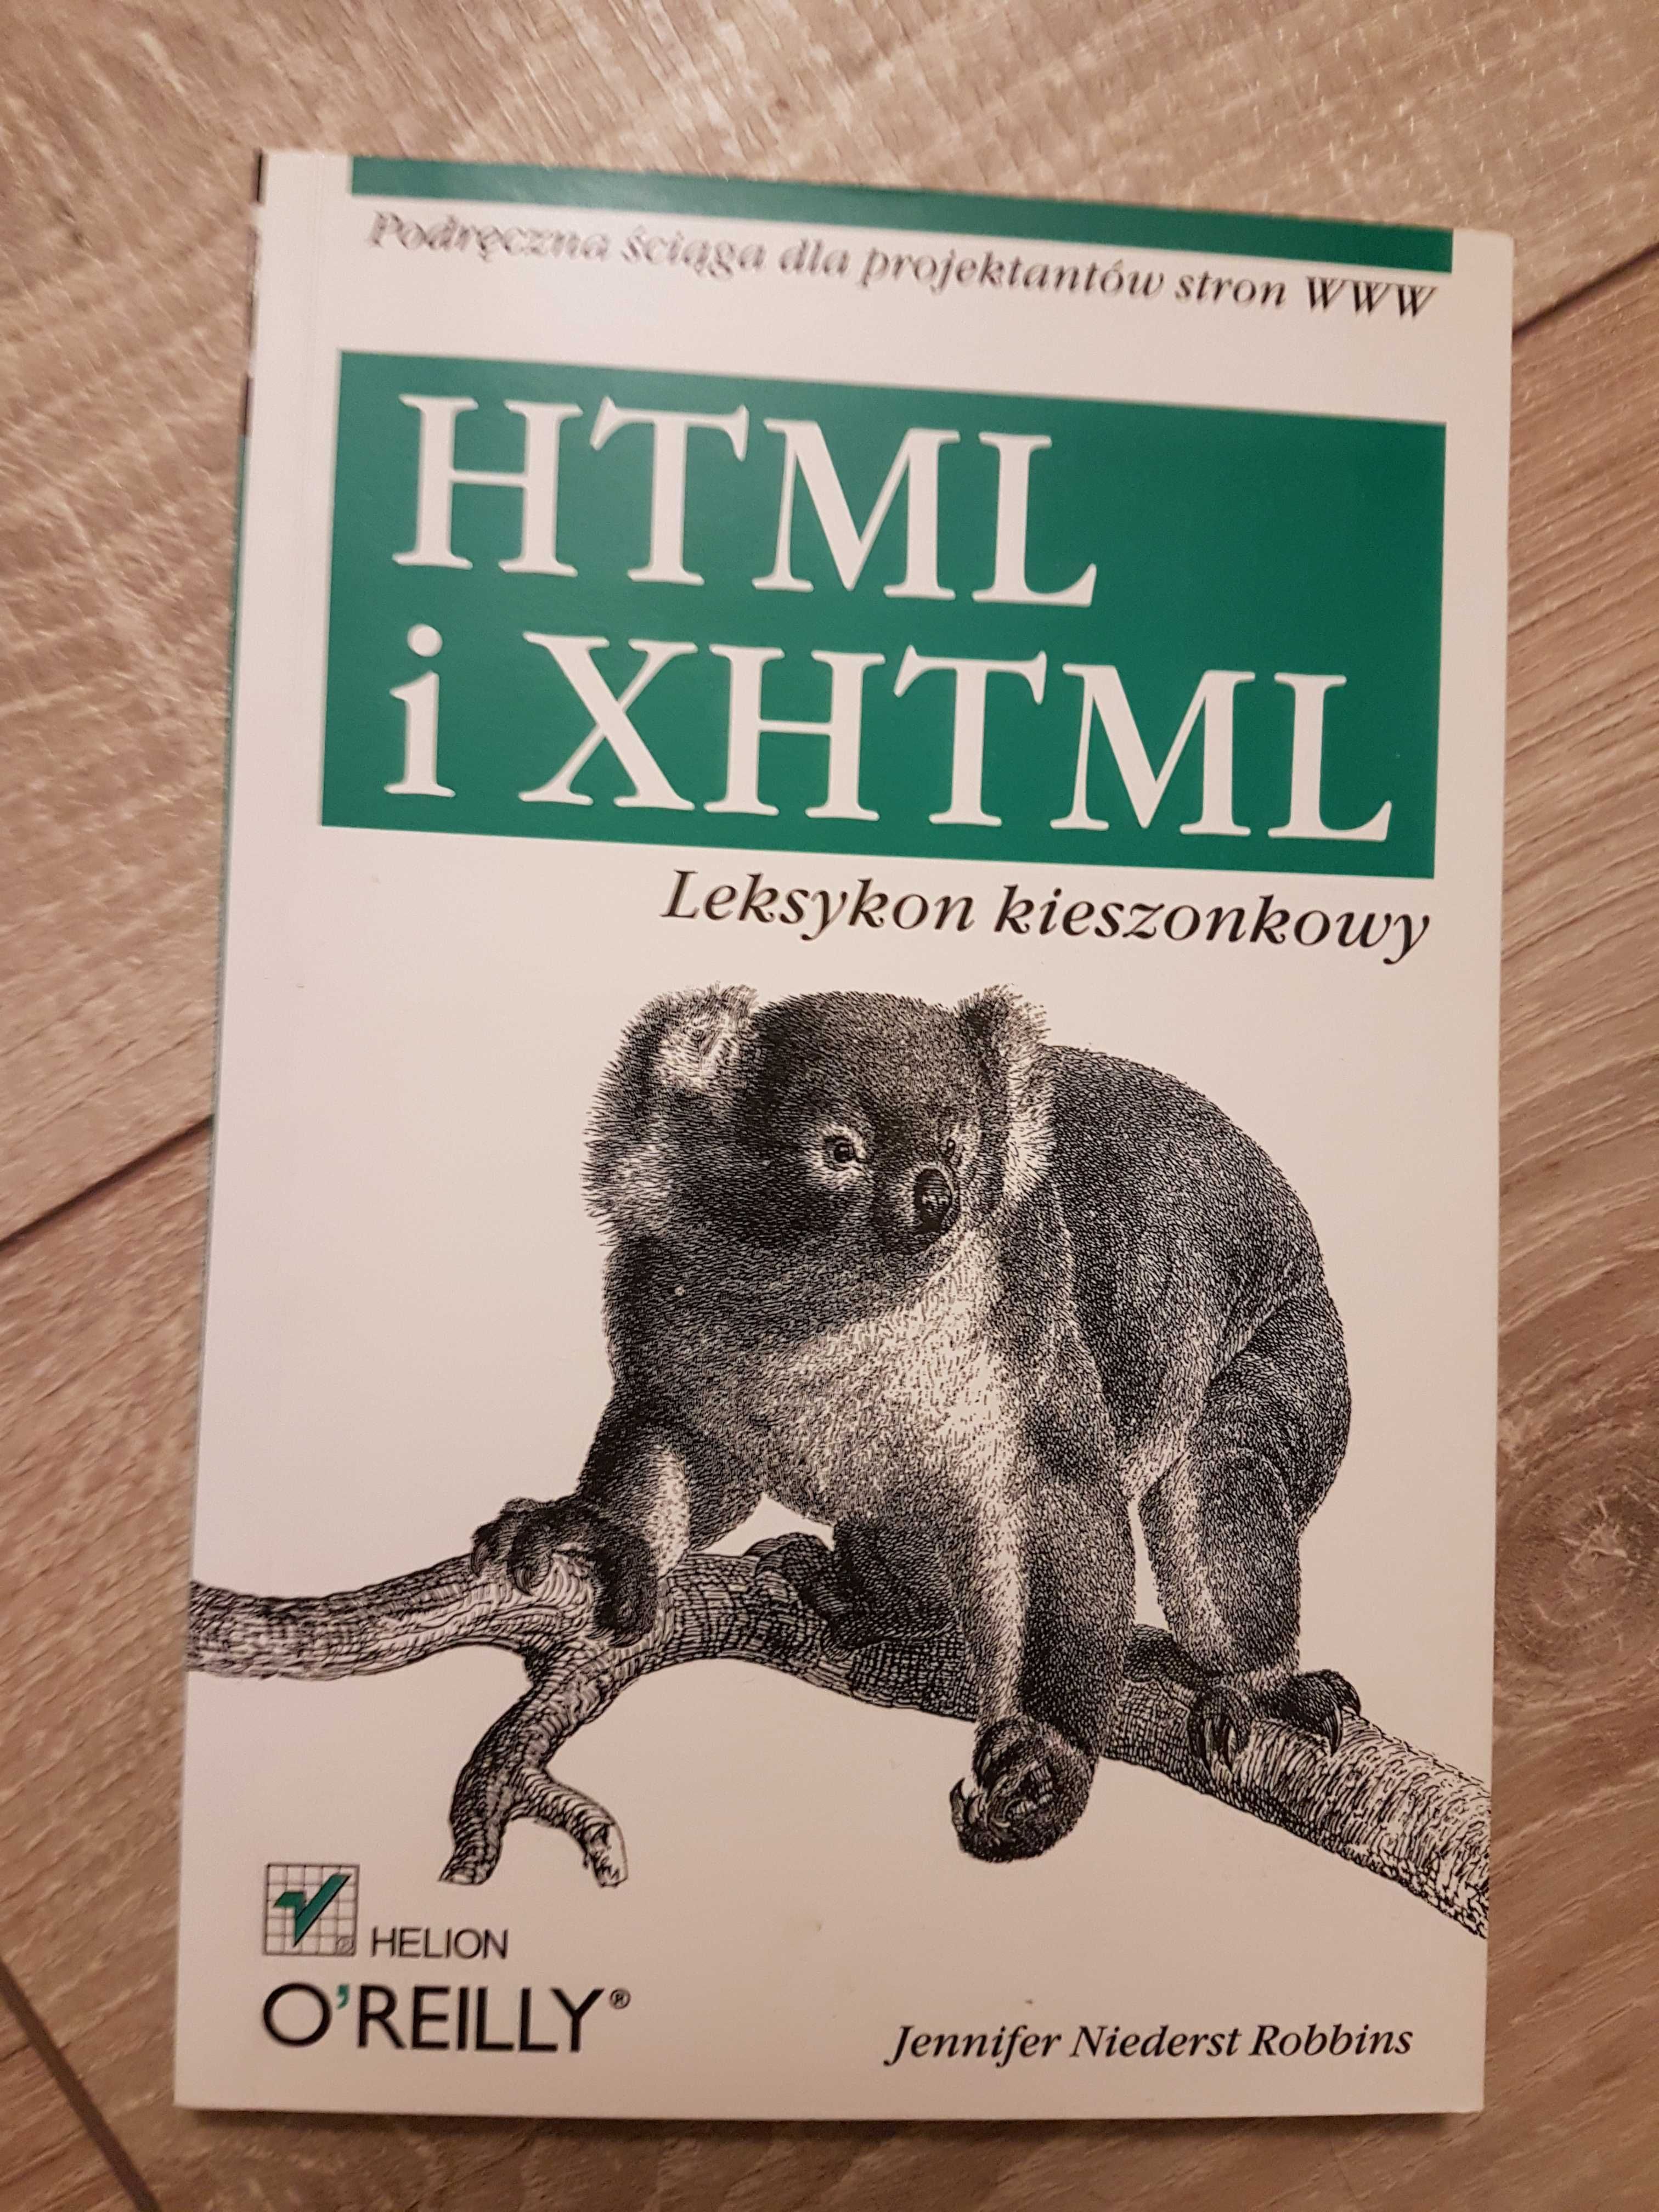 HTML i XHTML Leksykon kieszonkowy książka programowanie informatyka